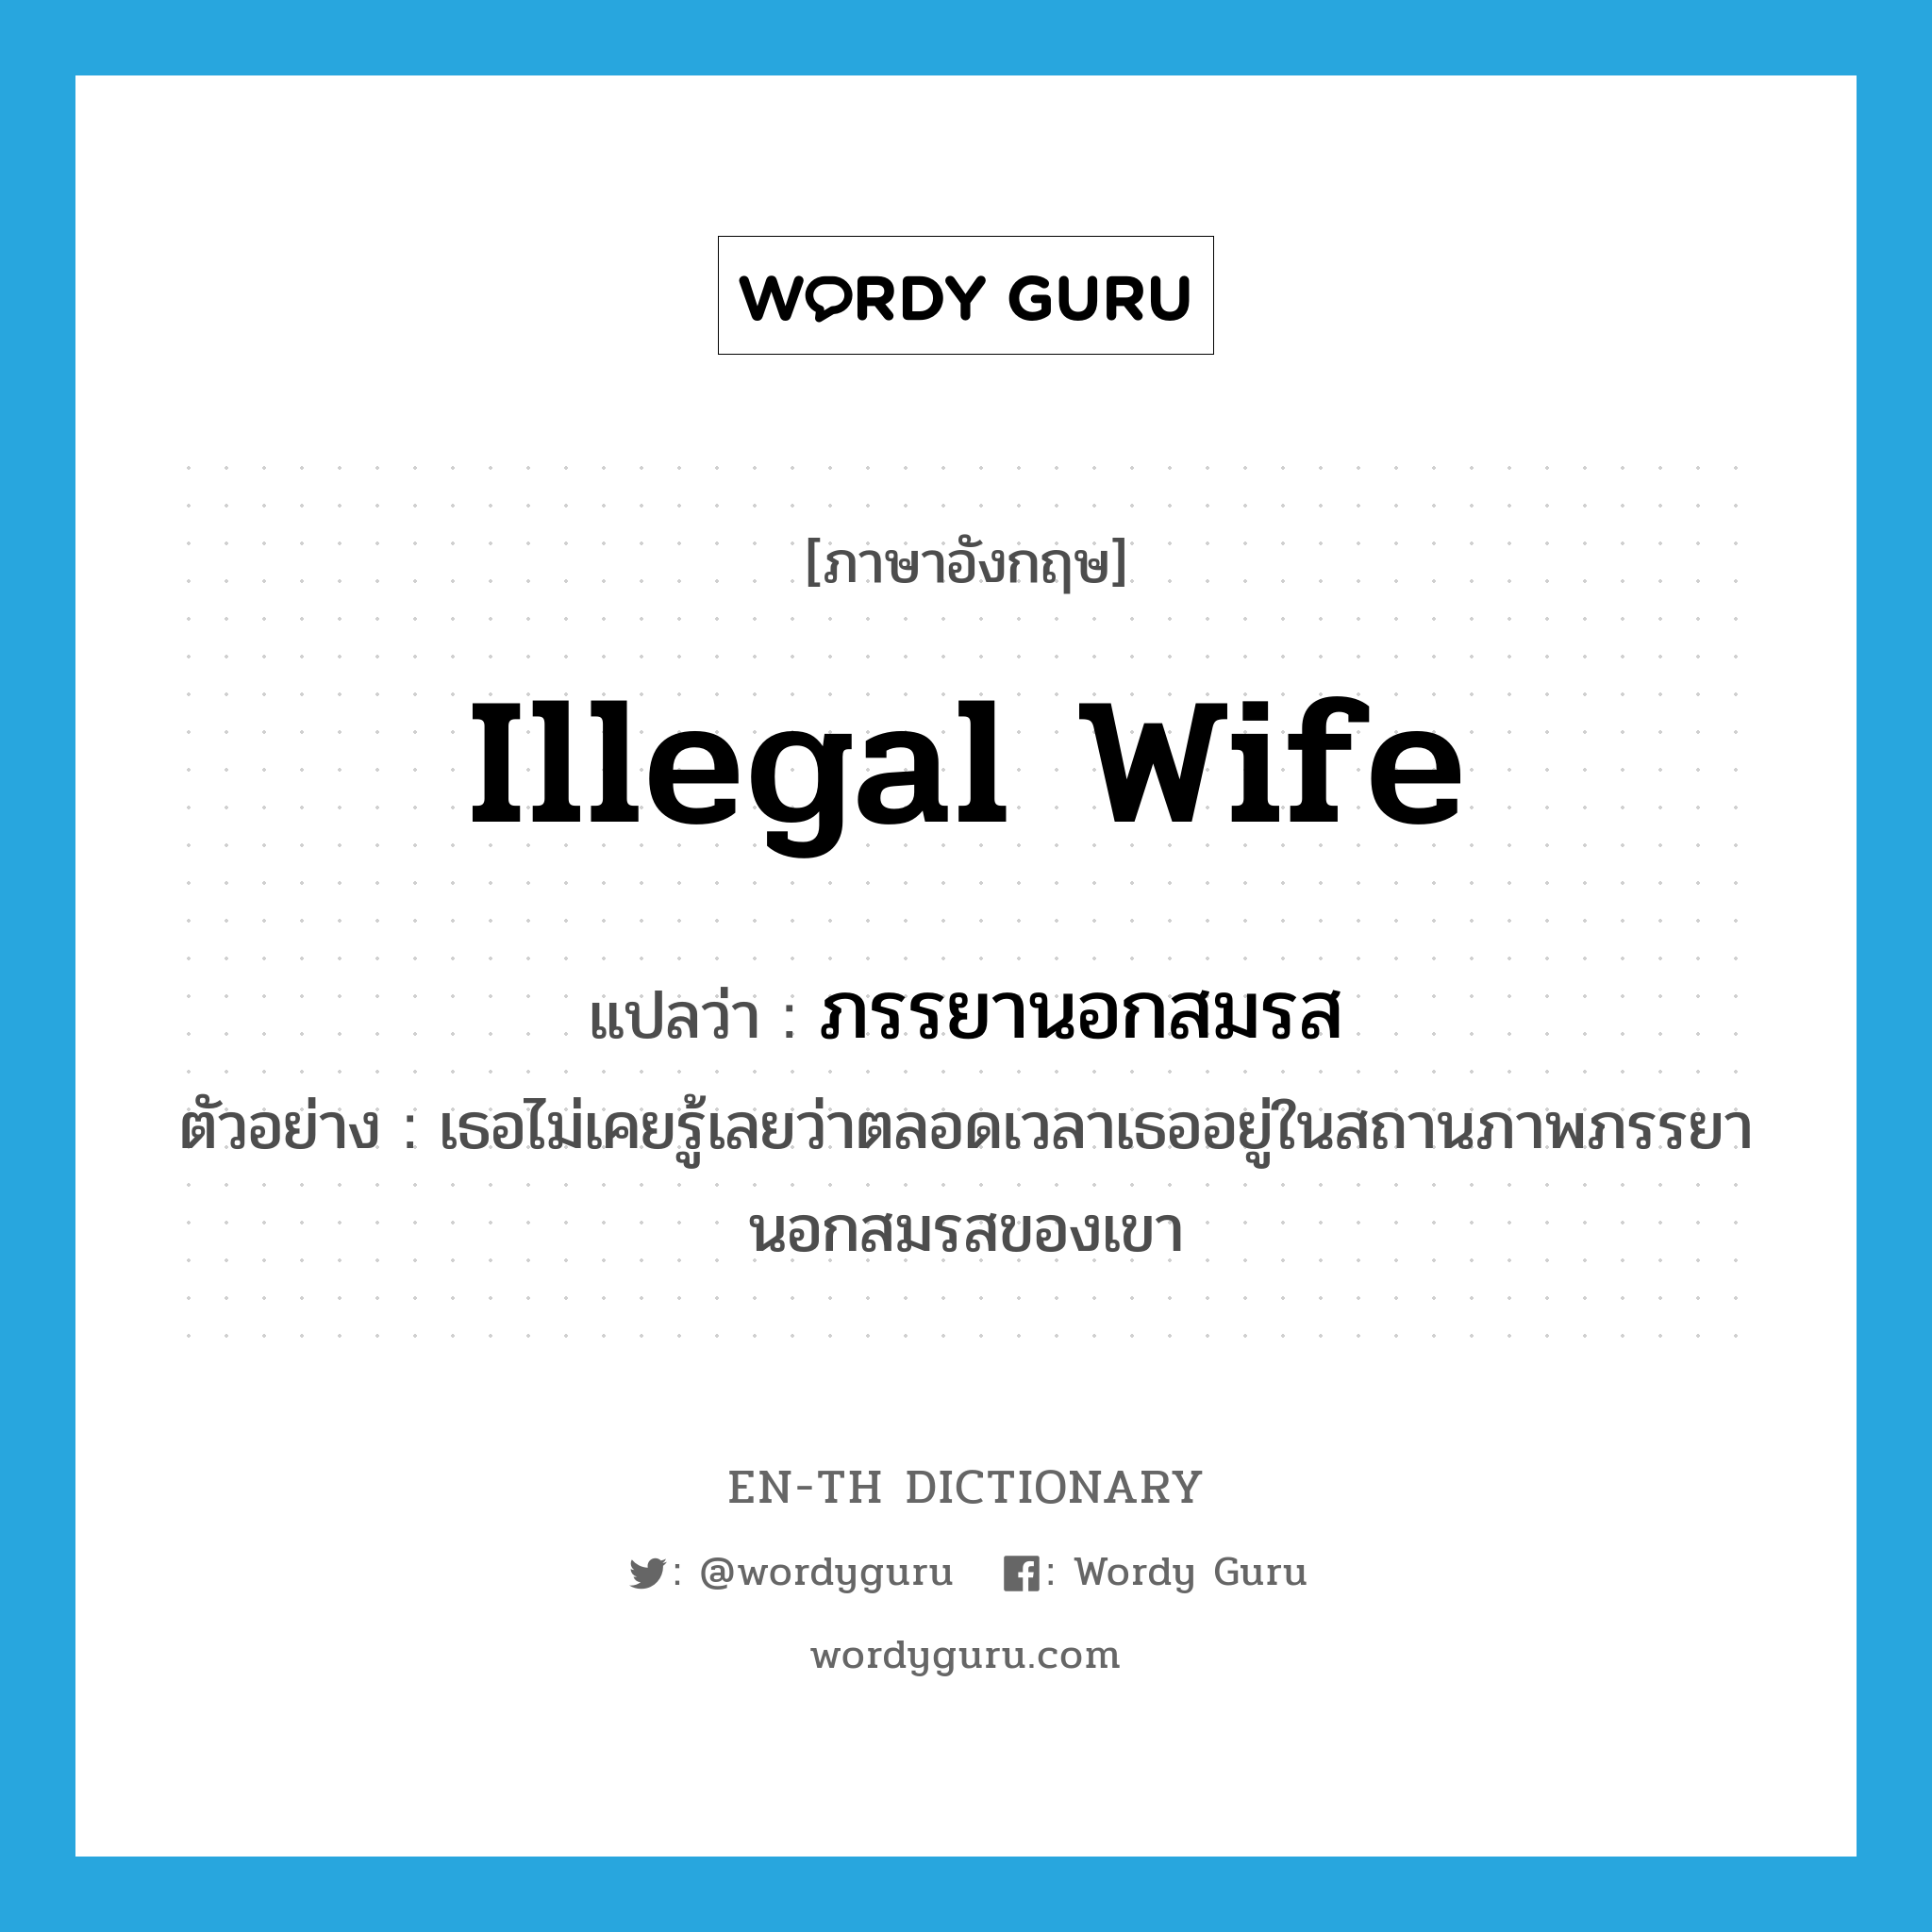 illegal wife แปลว่า?, คำศัพท์ภาษาอังกฤษ illegal wife แปลว่า ภรรยานอกสมรส ประเภท N ตัวอย่าง เธอไม่เคยรู้เลยว่าตลอดเวลาเธออยู่ในสถานภาพภรรยานอกสมรสของเขา หมวด N